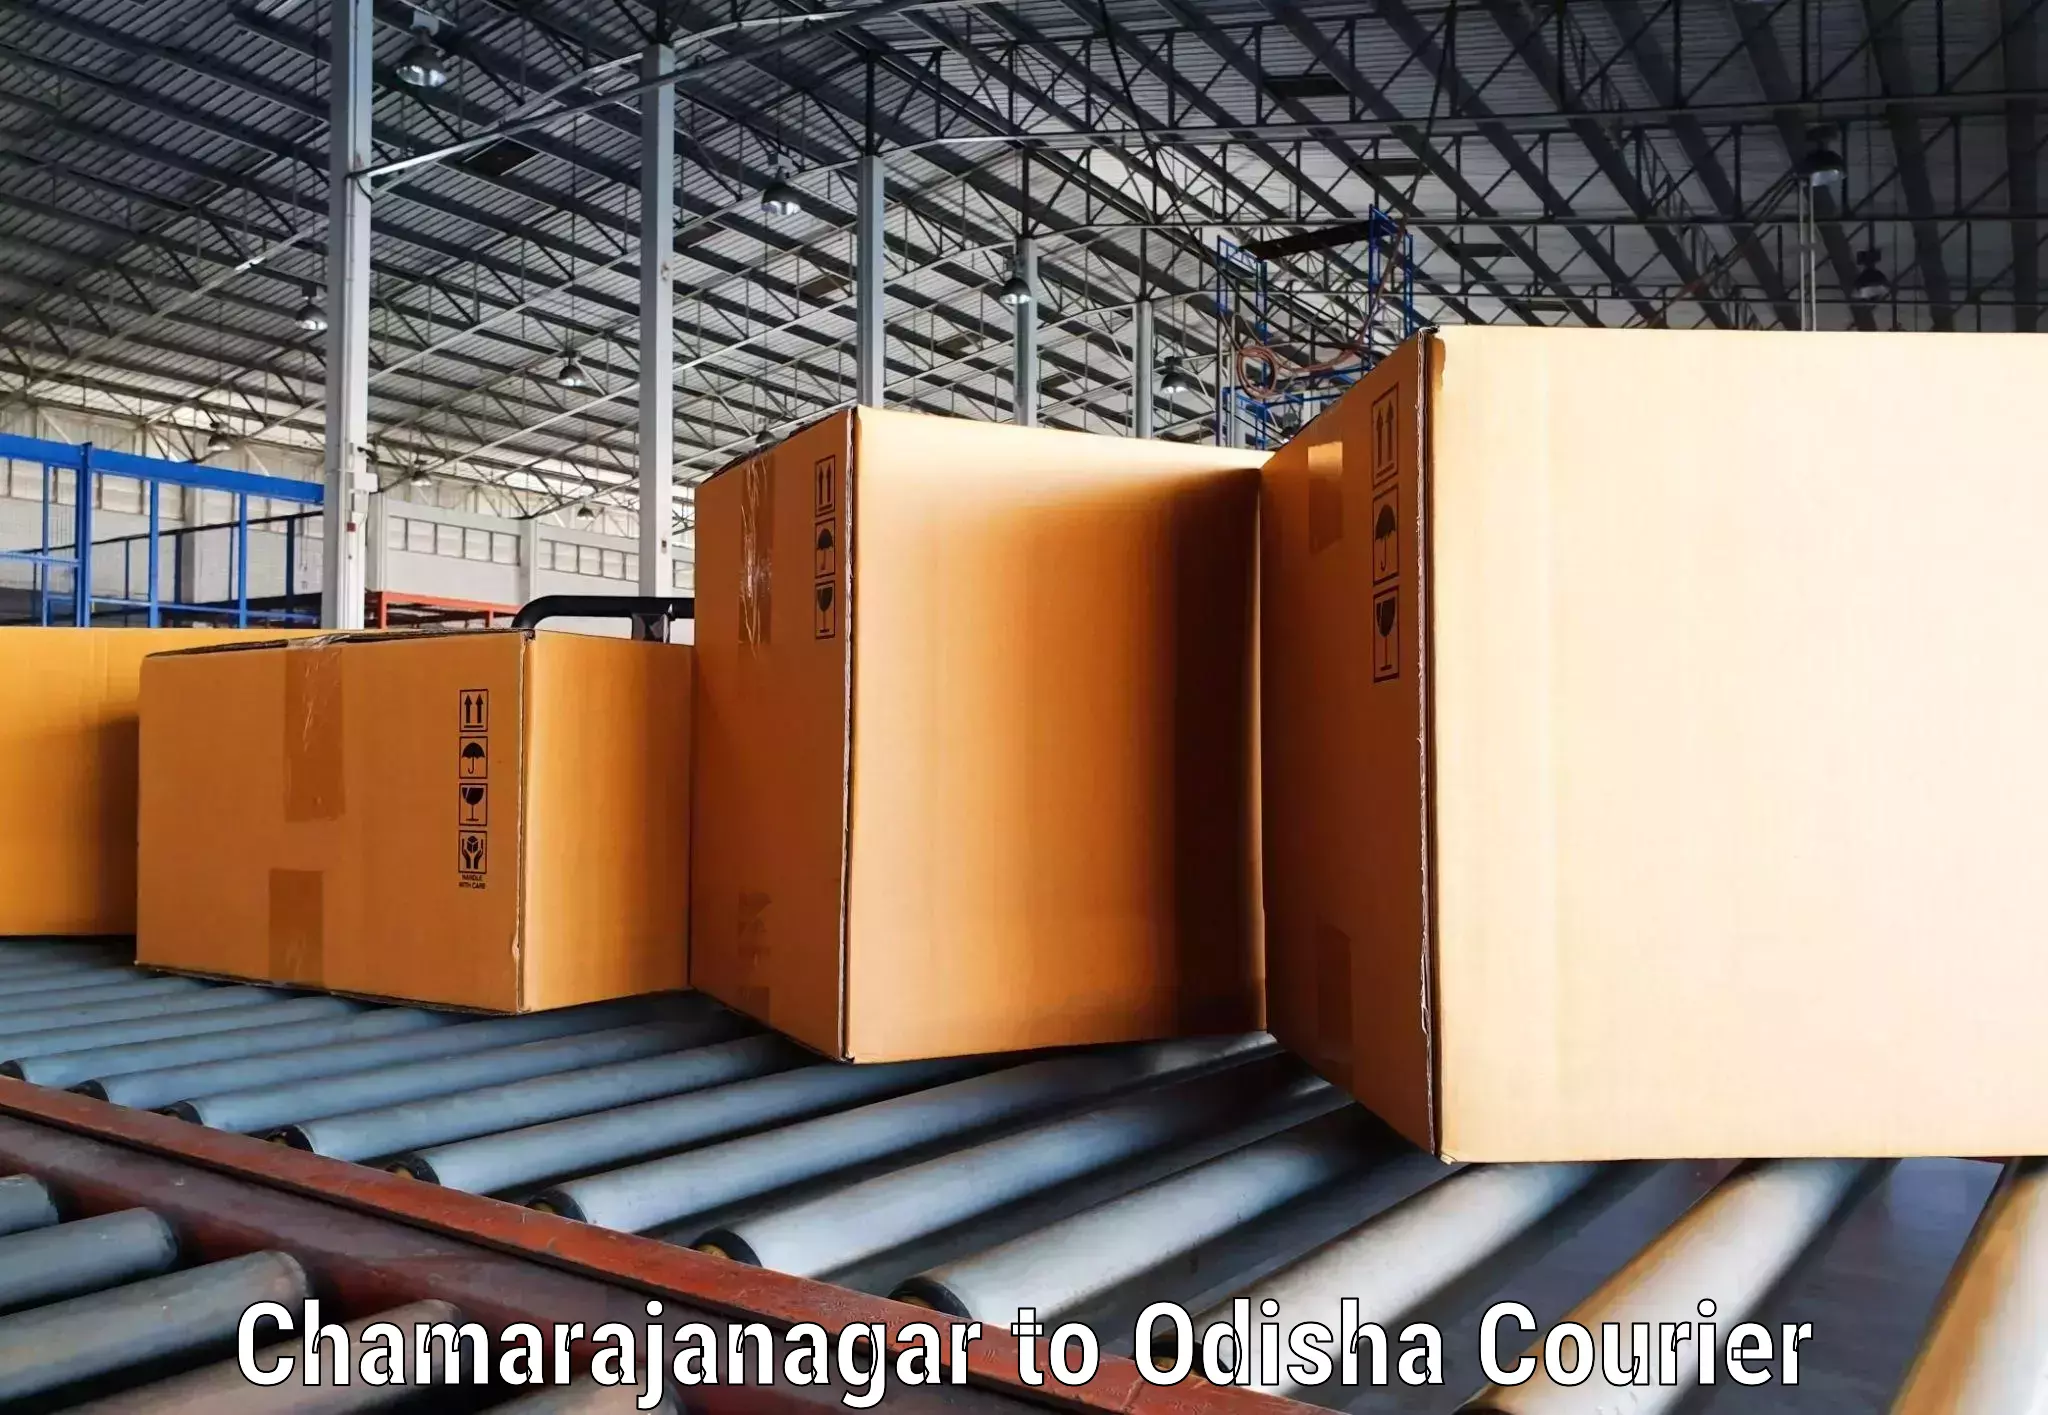 Business shipping needs Chamarajanagar to Odisha